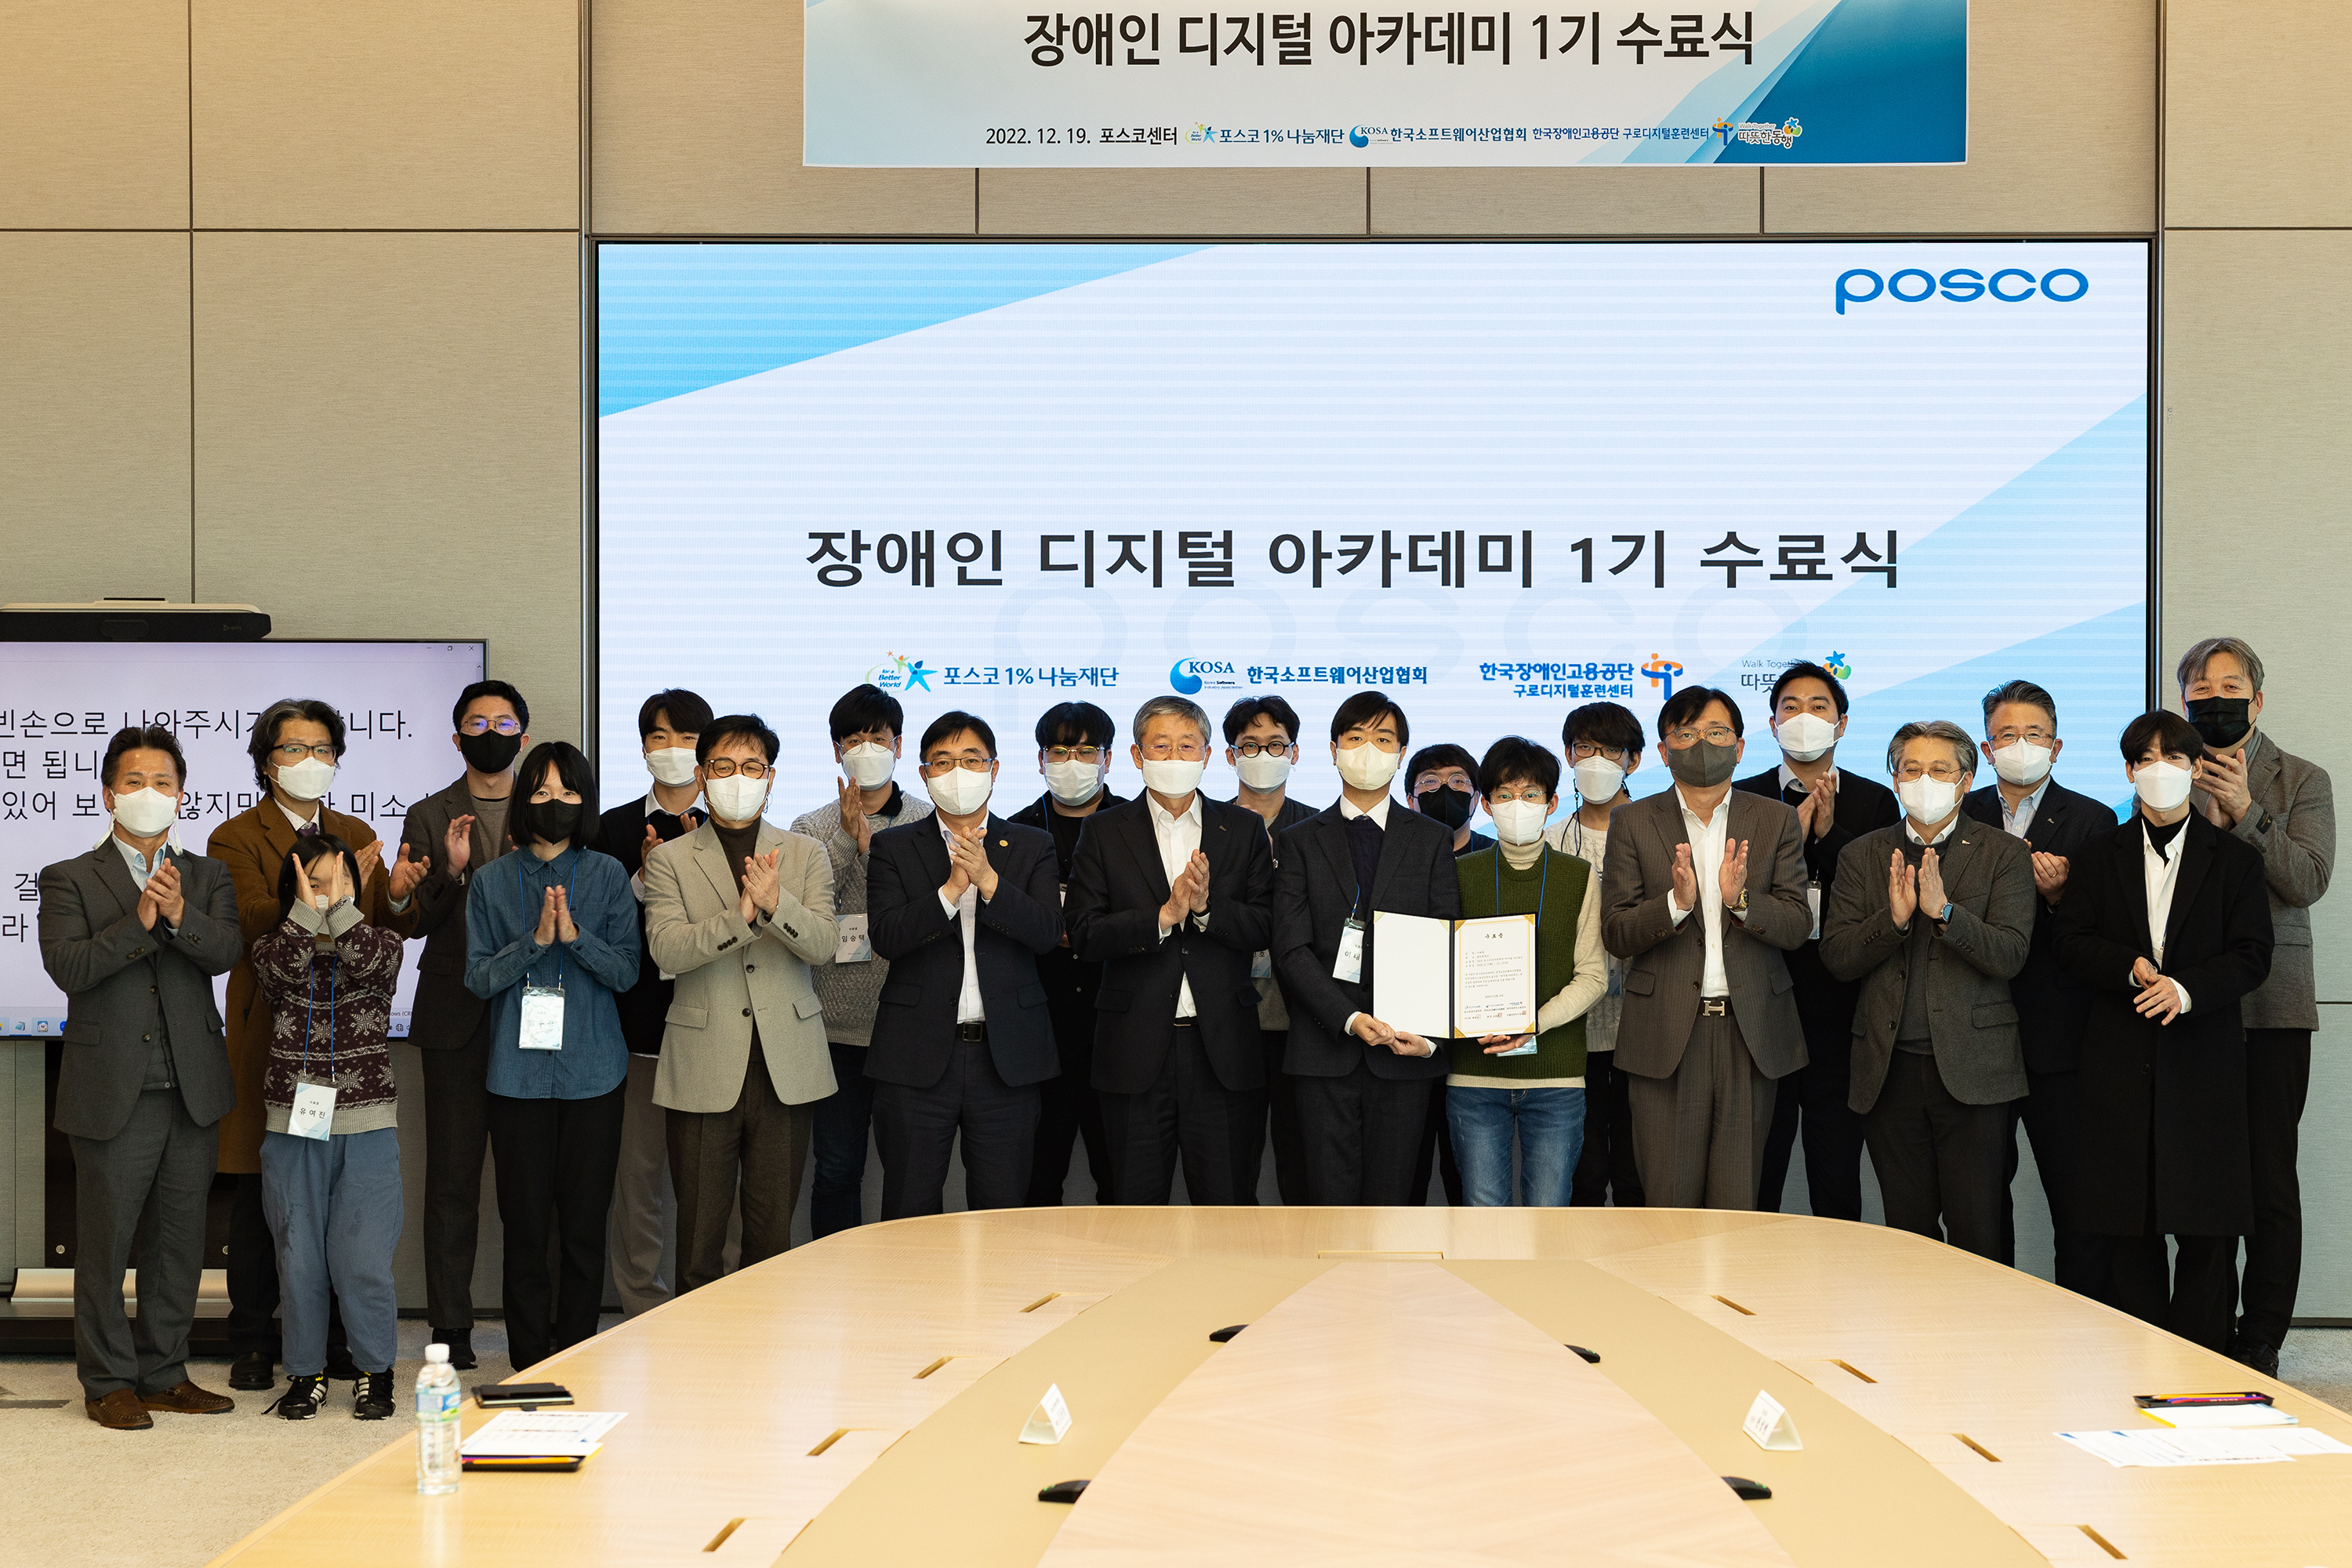 ▲포스코1%나눔재단이 12월 19일 서울 포스코센터에서 장애인 디지털 아카데미 1기 수료식을 열었다. 다같이 찍은 단체사진이다.